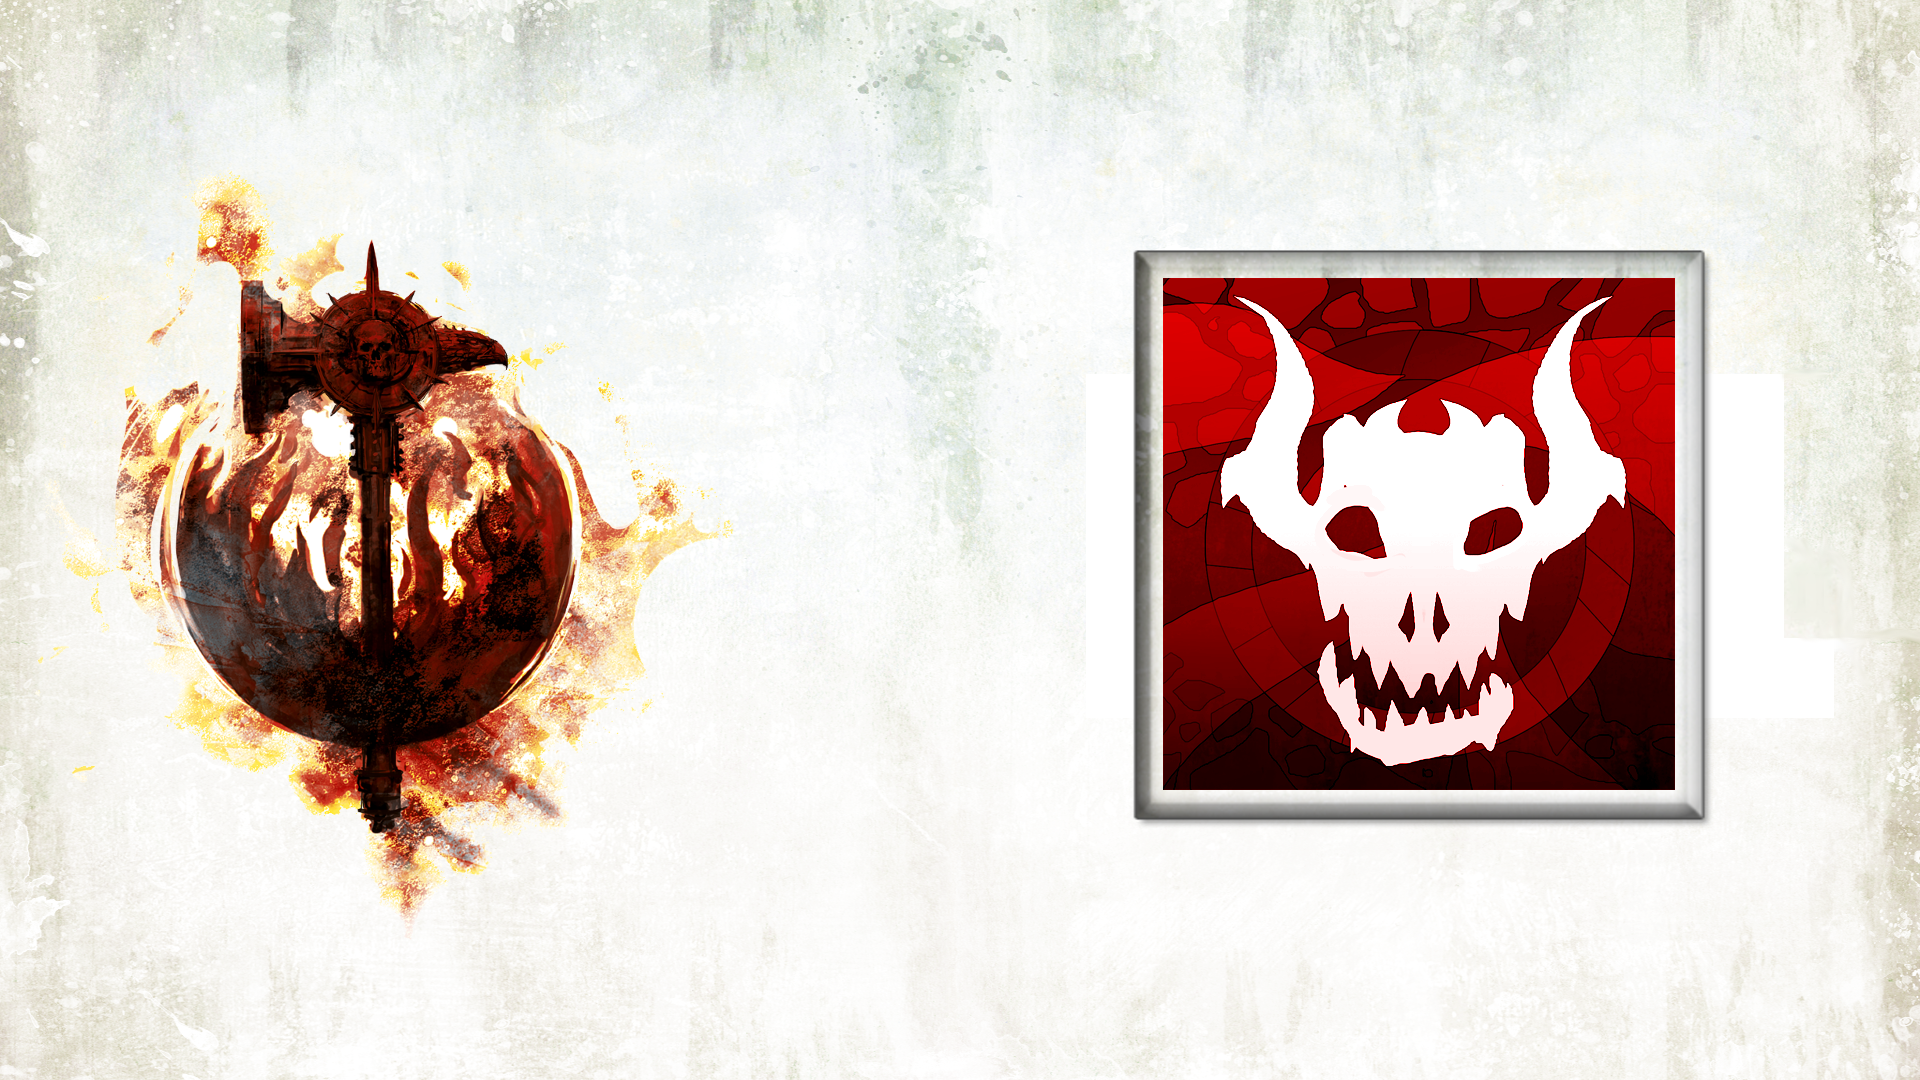 Icon for Beastman Killer